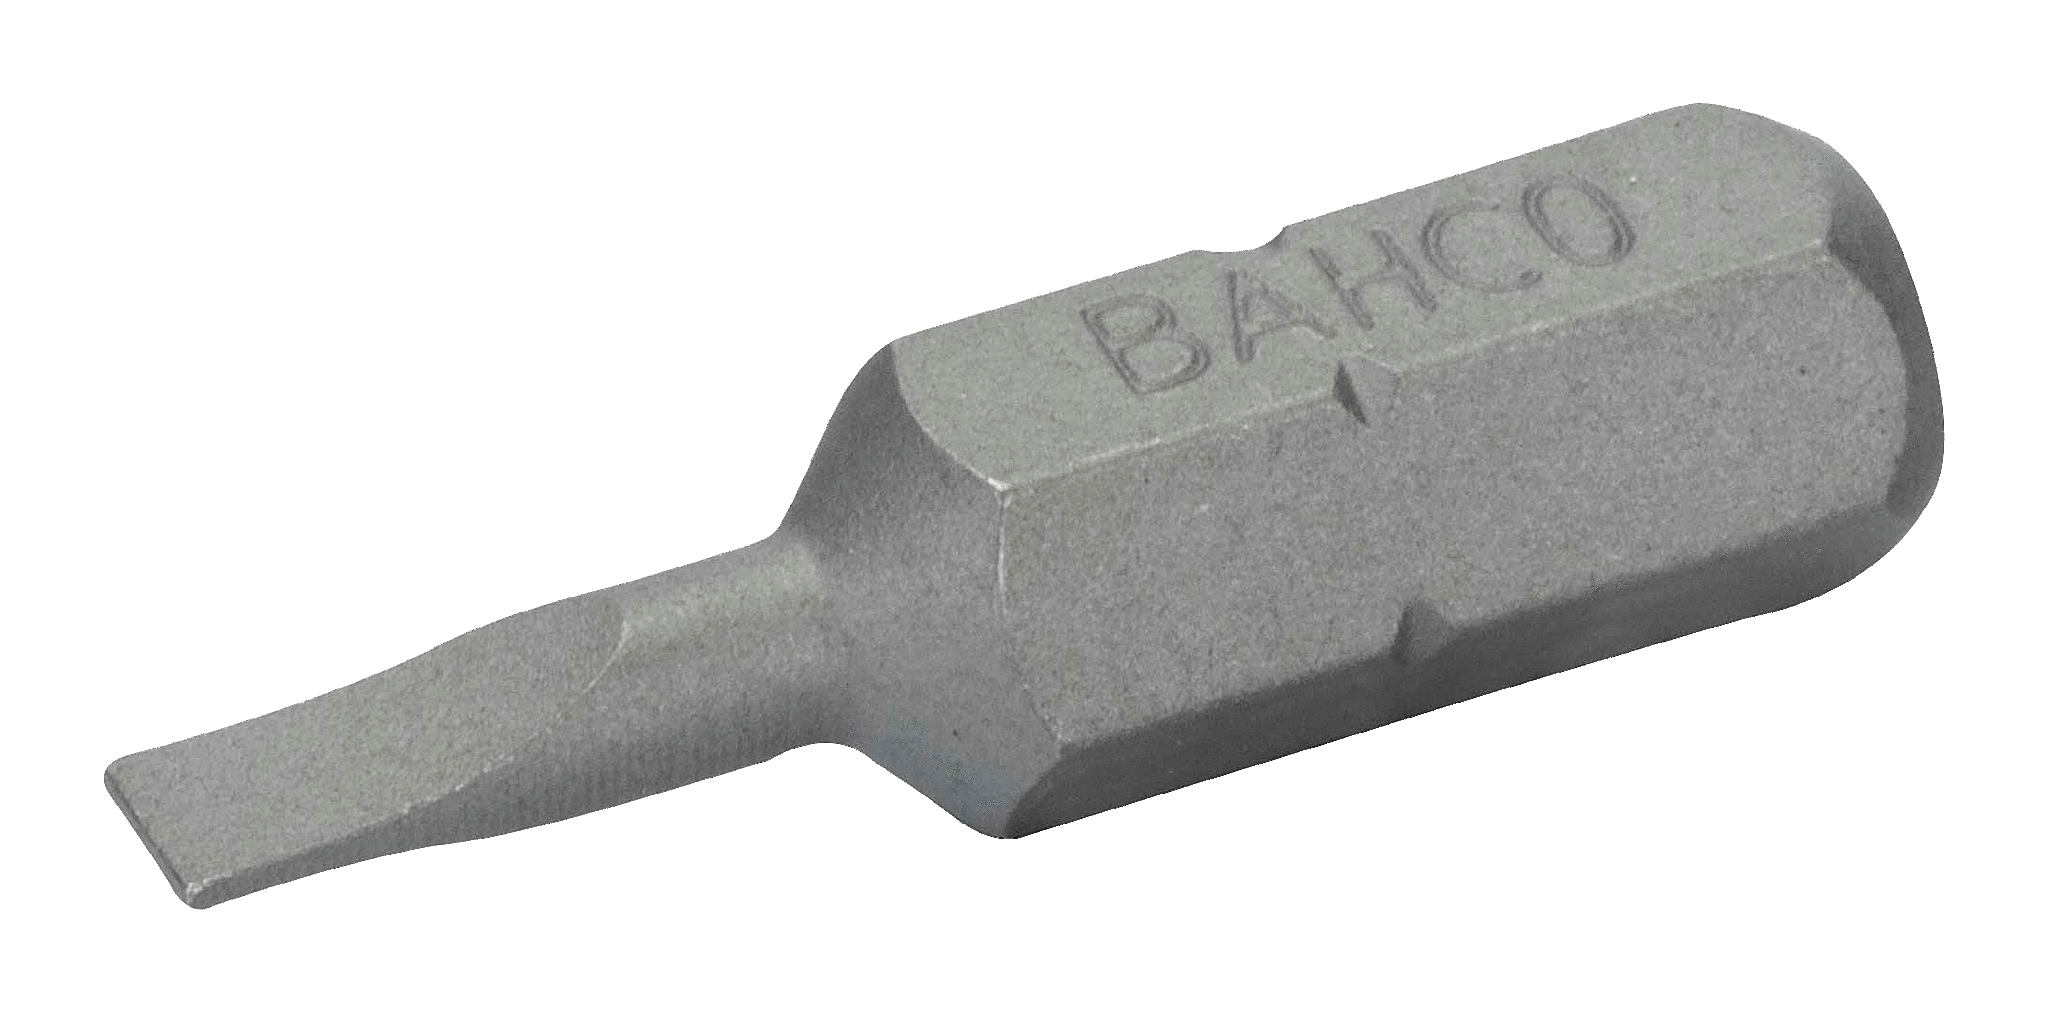 картинка Стандартные биты для отверток под винты со шлицем, 25 мм BAHCO 59S/0.6-4.5 от магазина "Элит-инструмент"